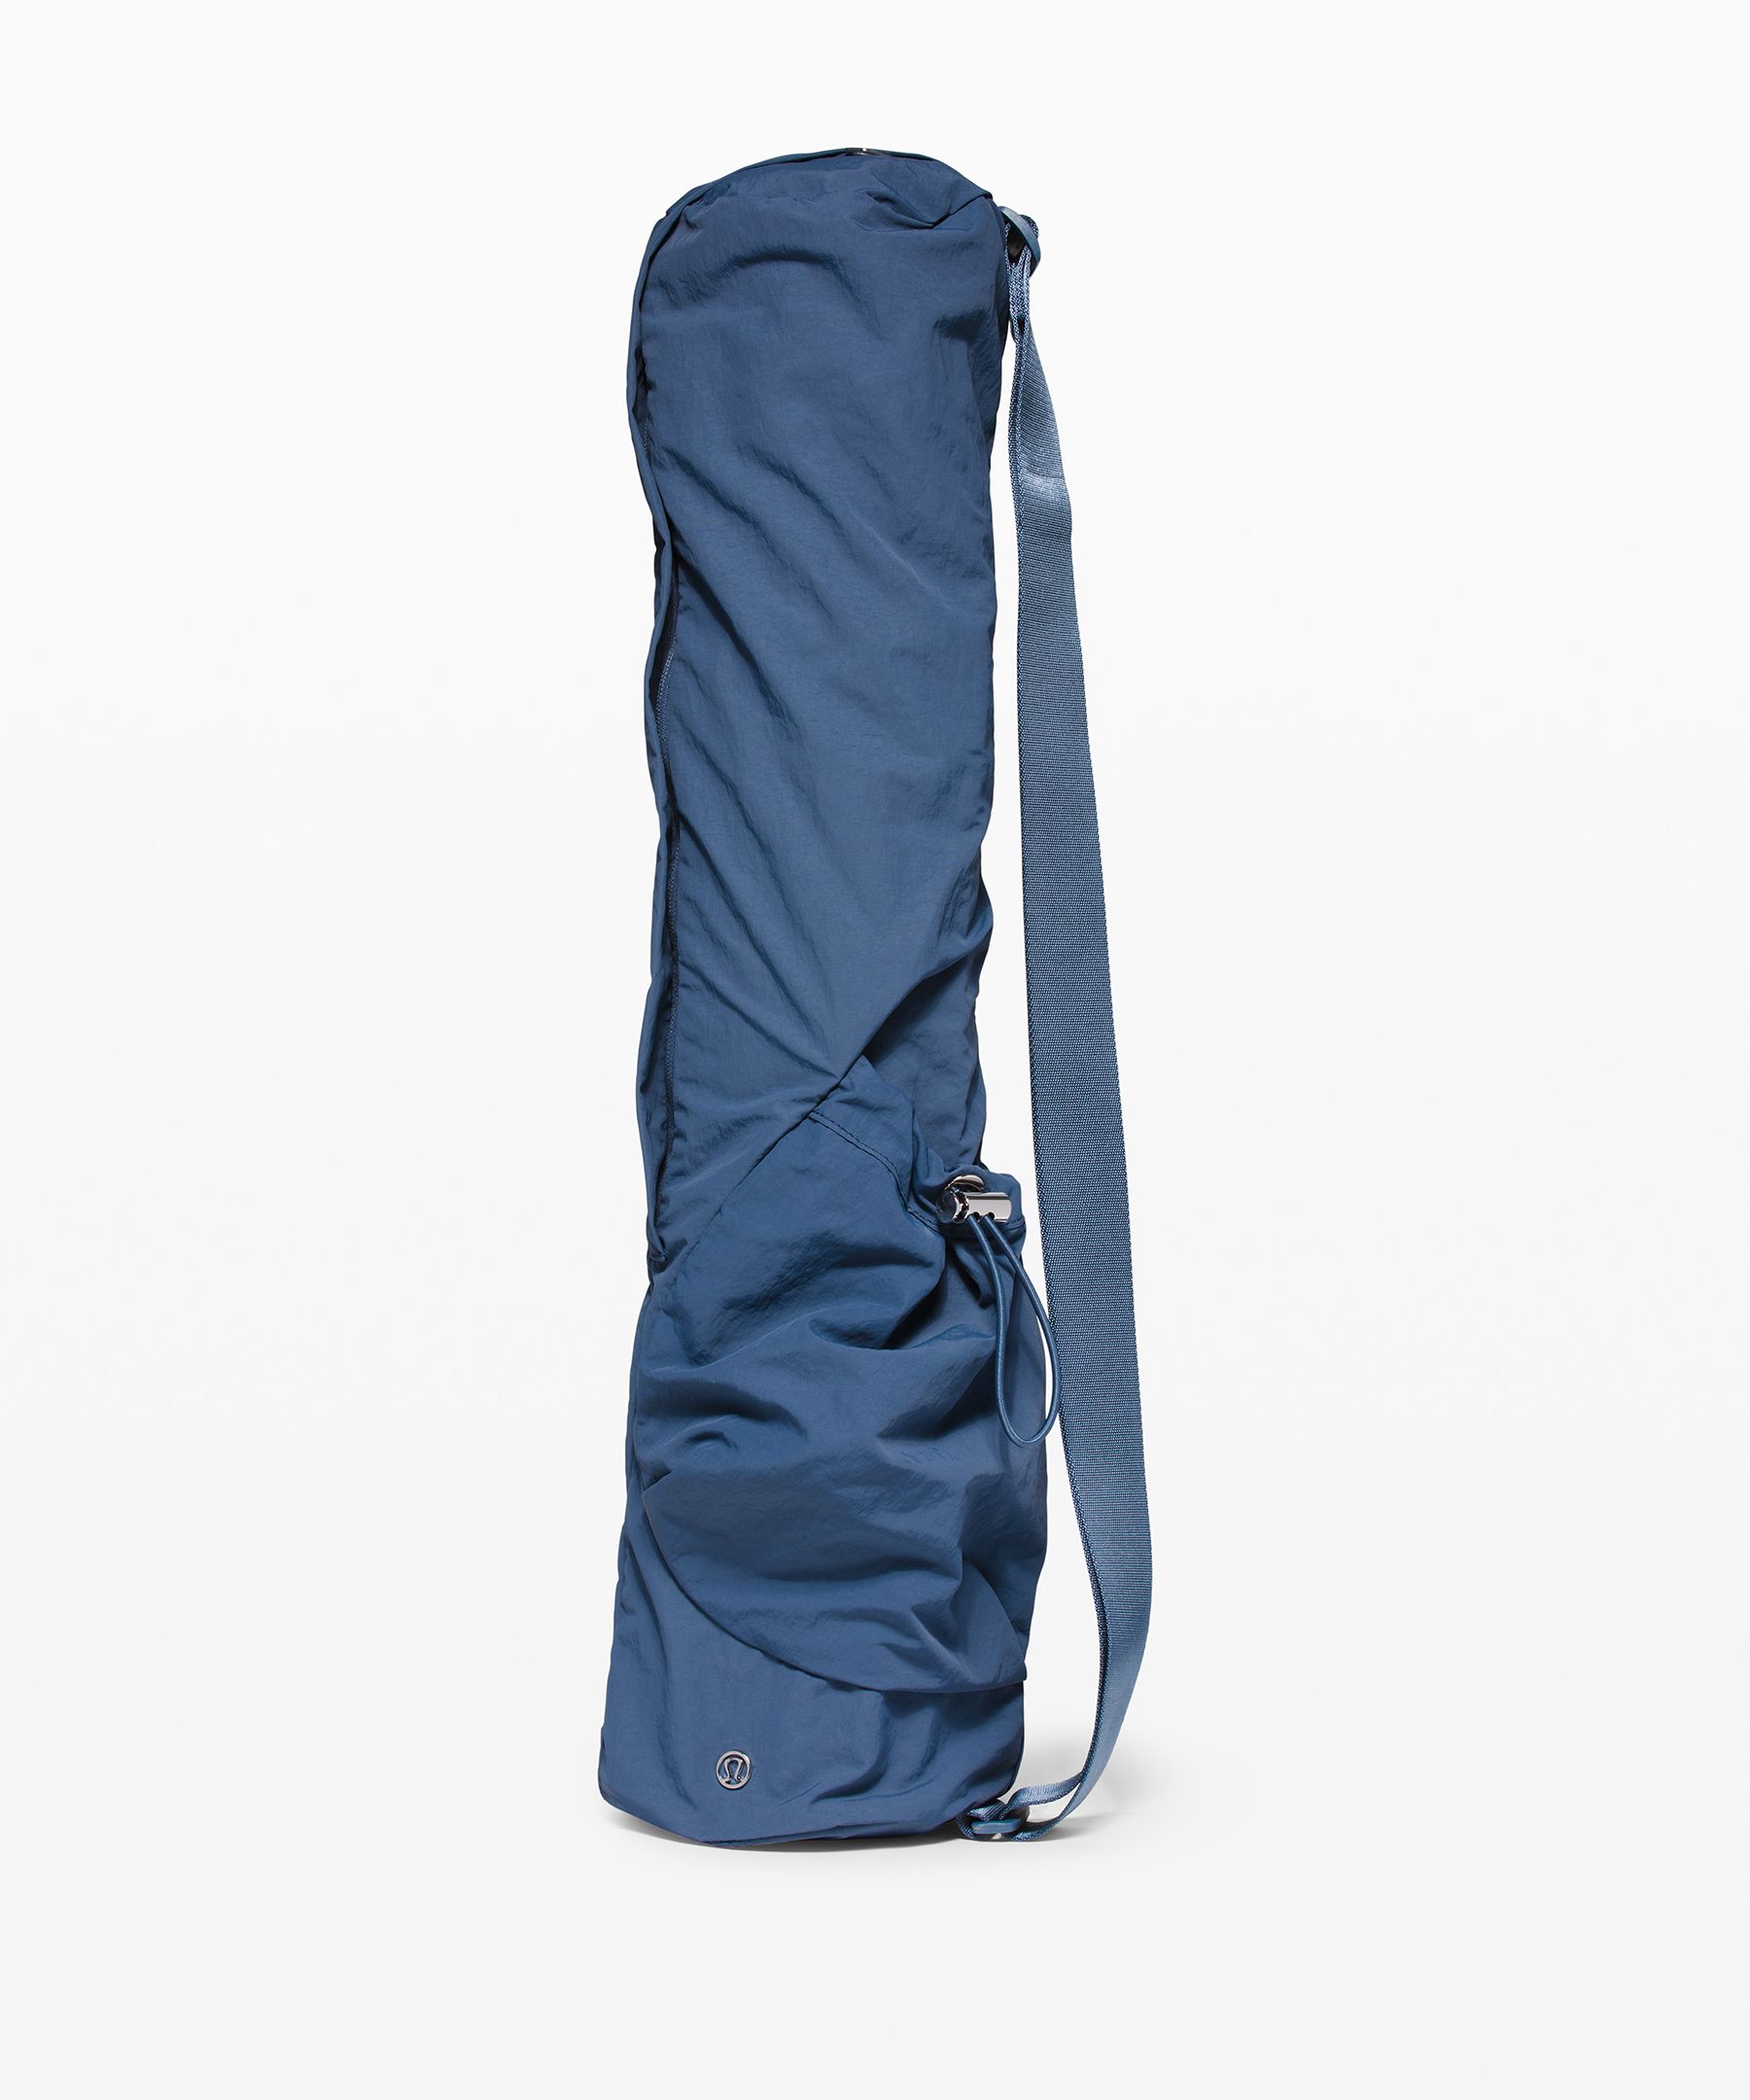 Lululemon The Yoga Mat Bag In Code Blue